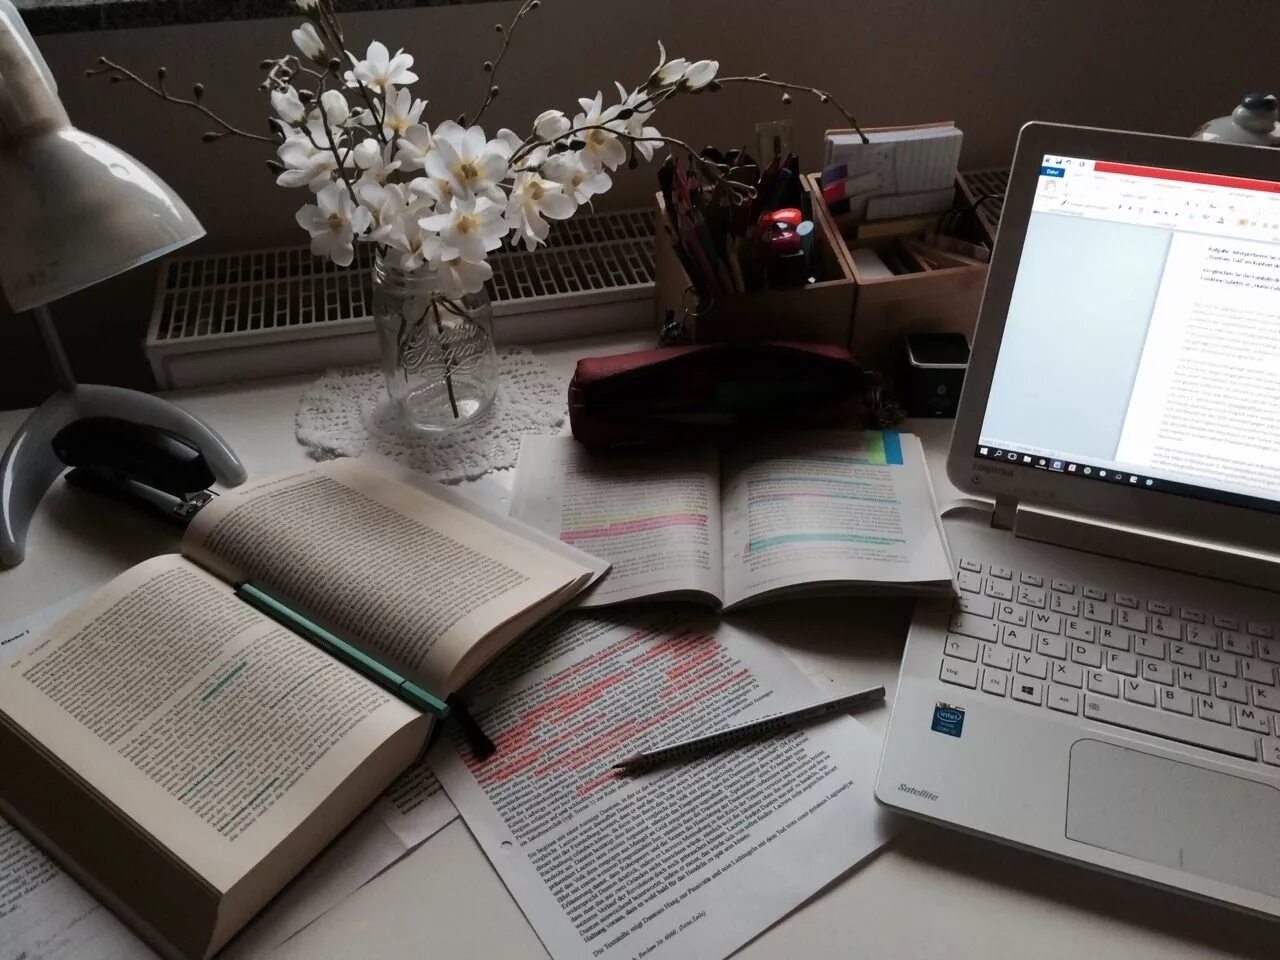 Домашнее задание мотивация. Эстетика учебы. Тетради и книги на столе. Обои учеба. Красивый компьютерный стол с книжками.